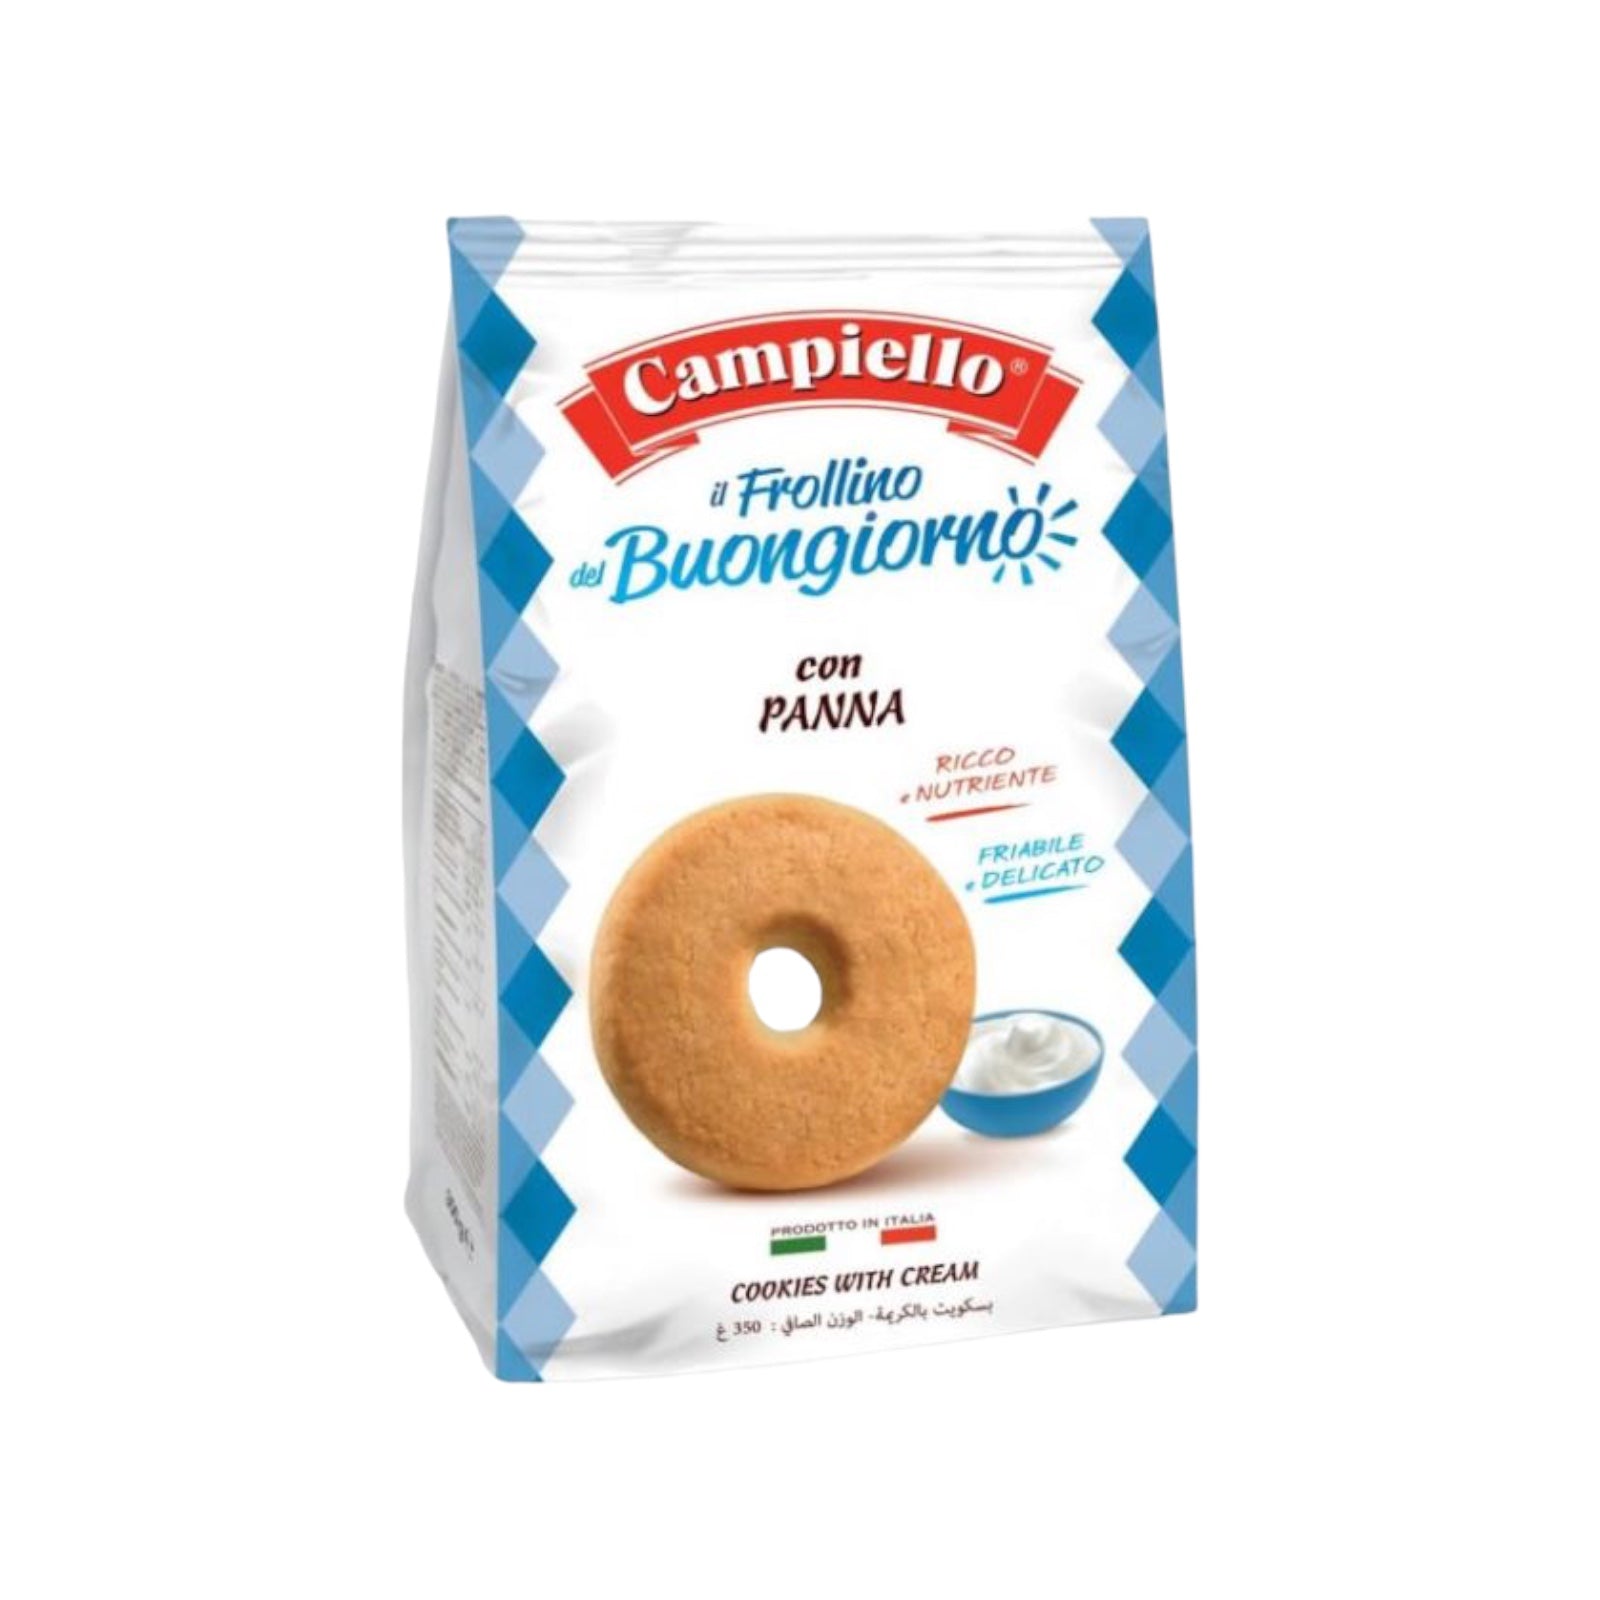 BEST BEFORE APR/24 Campiello Frollino del Buongiorno shortbread cookies with Milk Cream12 oz.